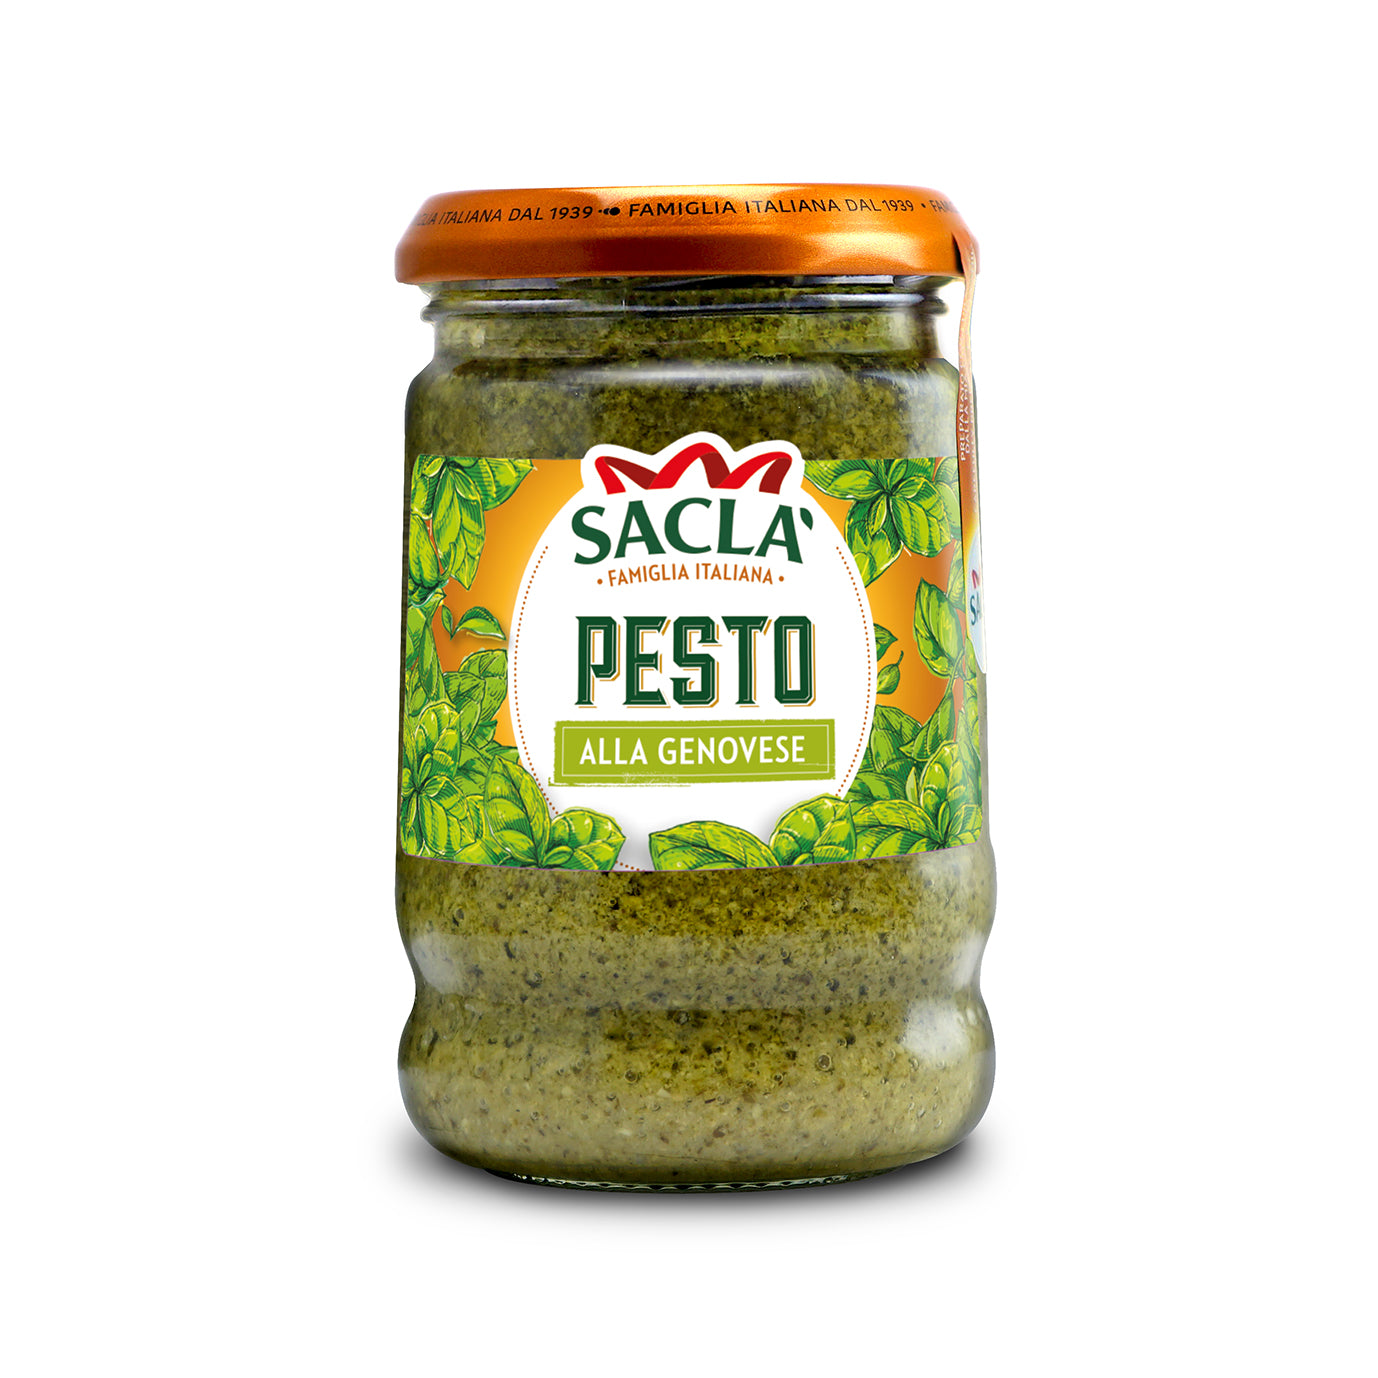 Sacla Pesto Alla Genovese 190g